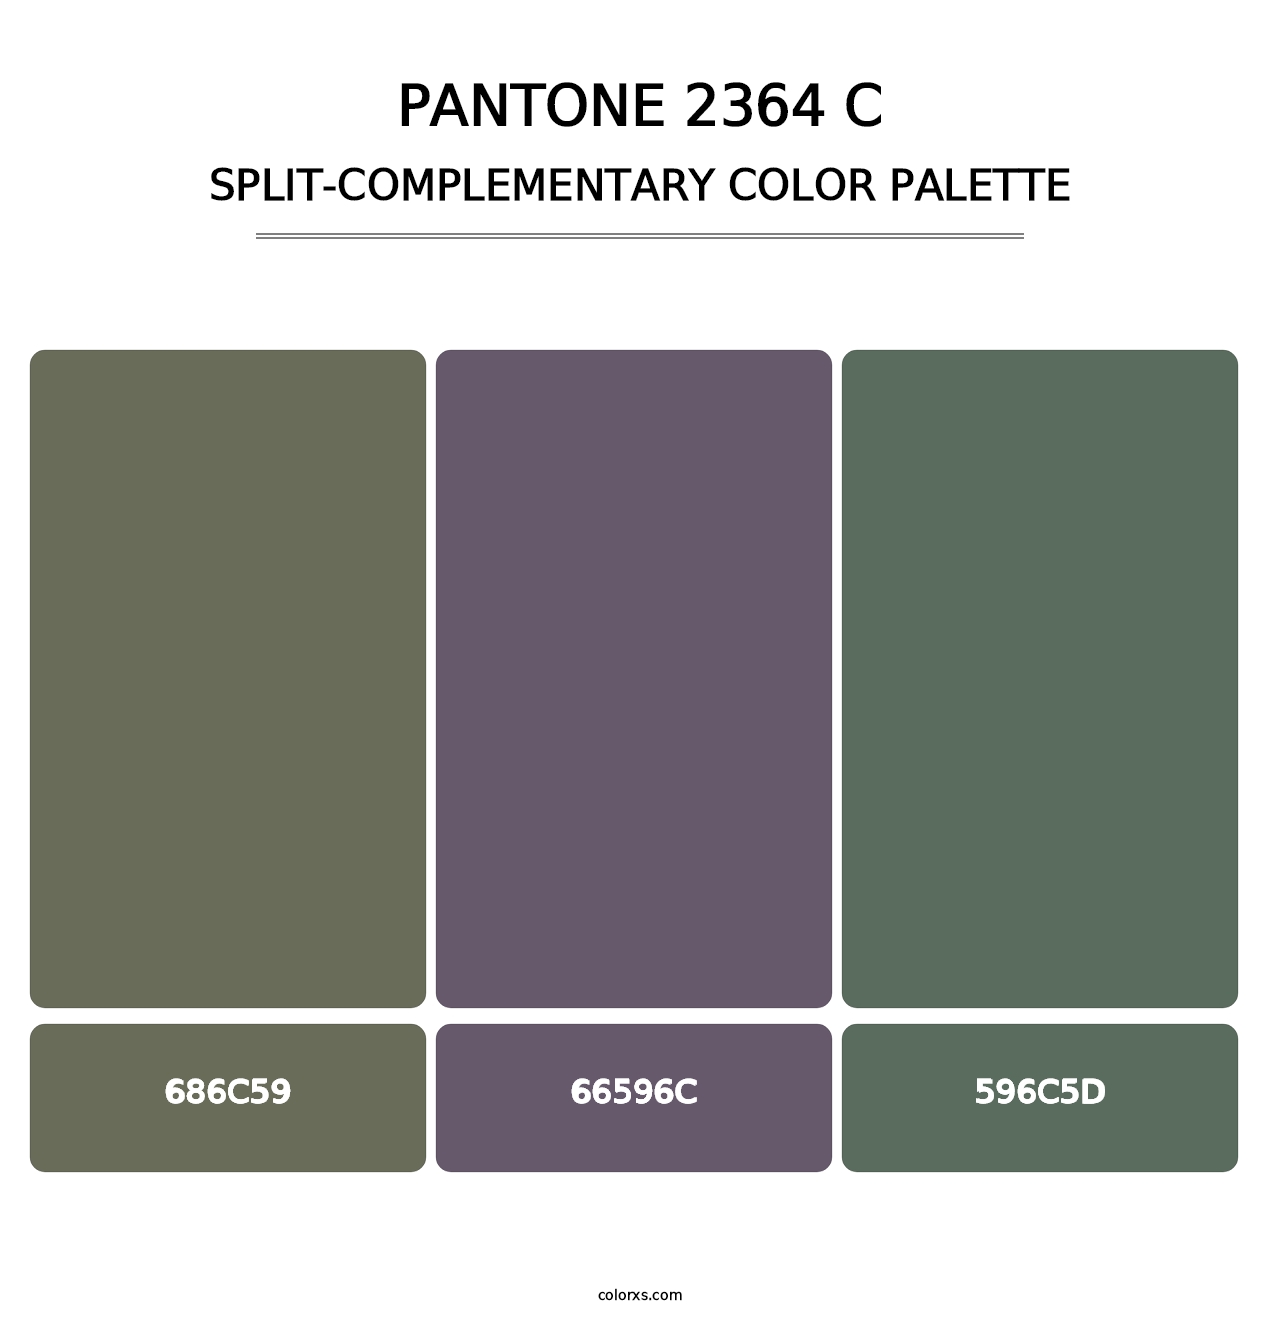 PANTONE 2364 C - Split-Complementary Color Palette